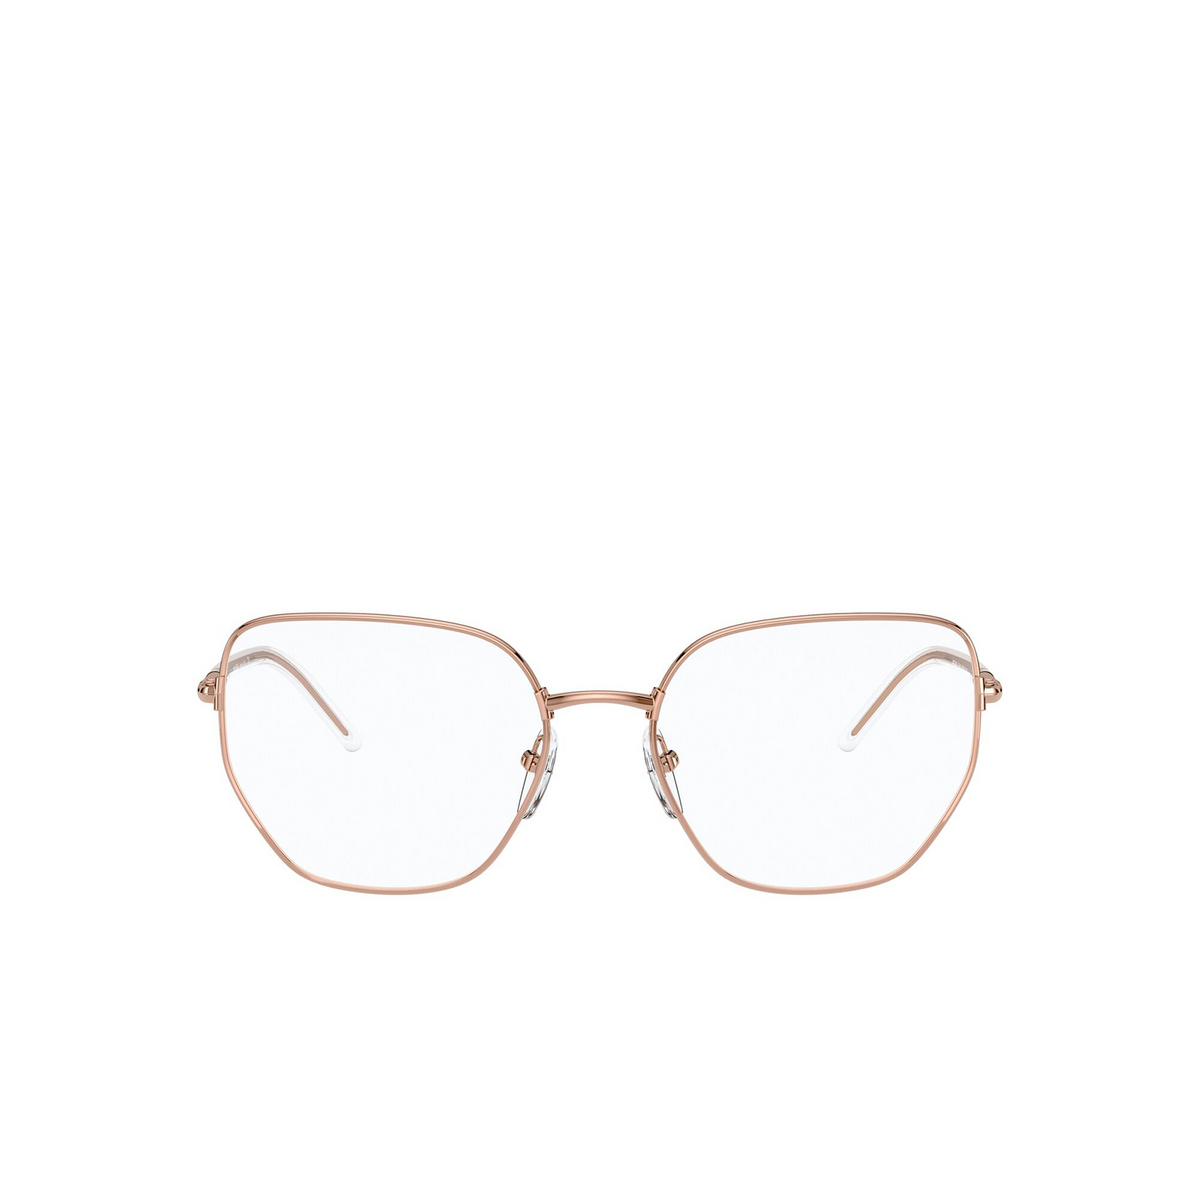 Prada® Irregular Eyeglasses: PR 60WV color Pink Gold SVF1O1 - front view.